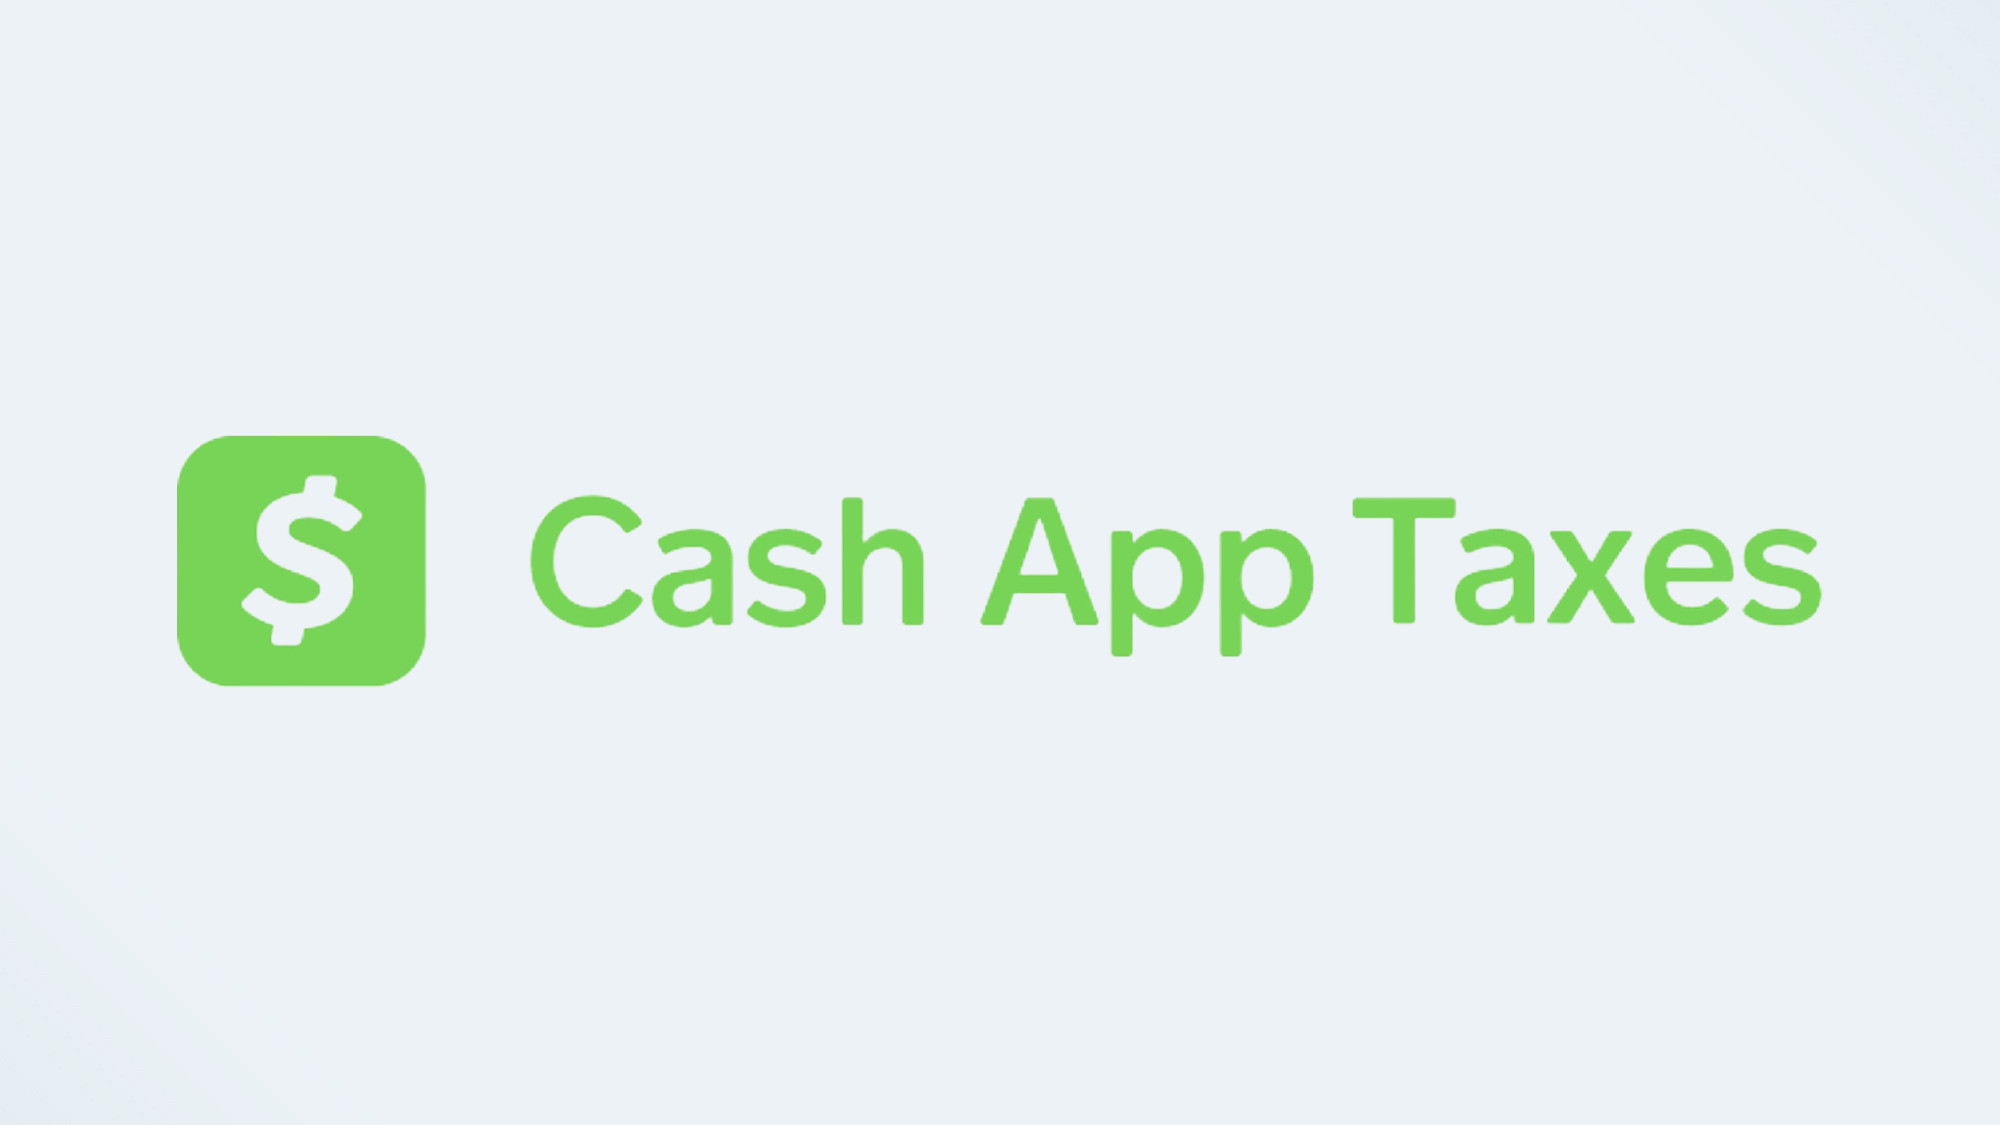 Cash App Taxes logo: Best Tax Software